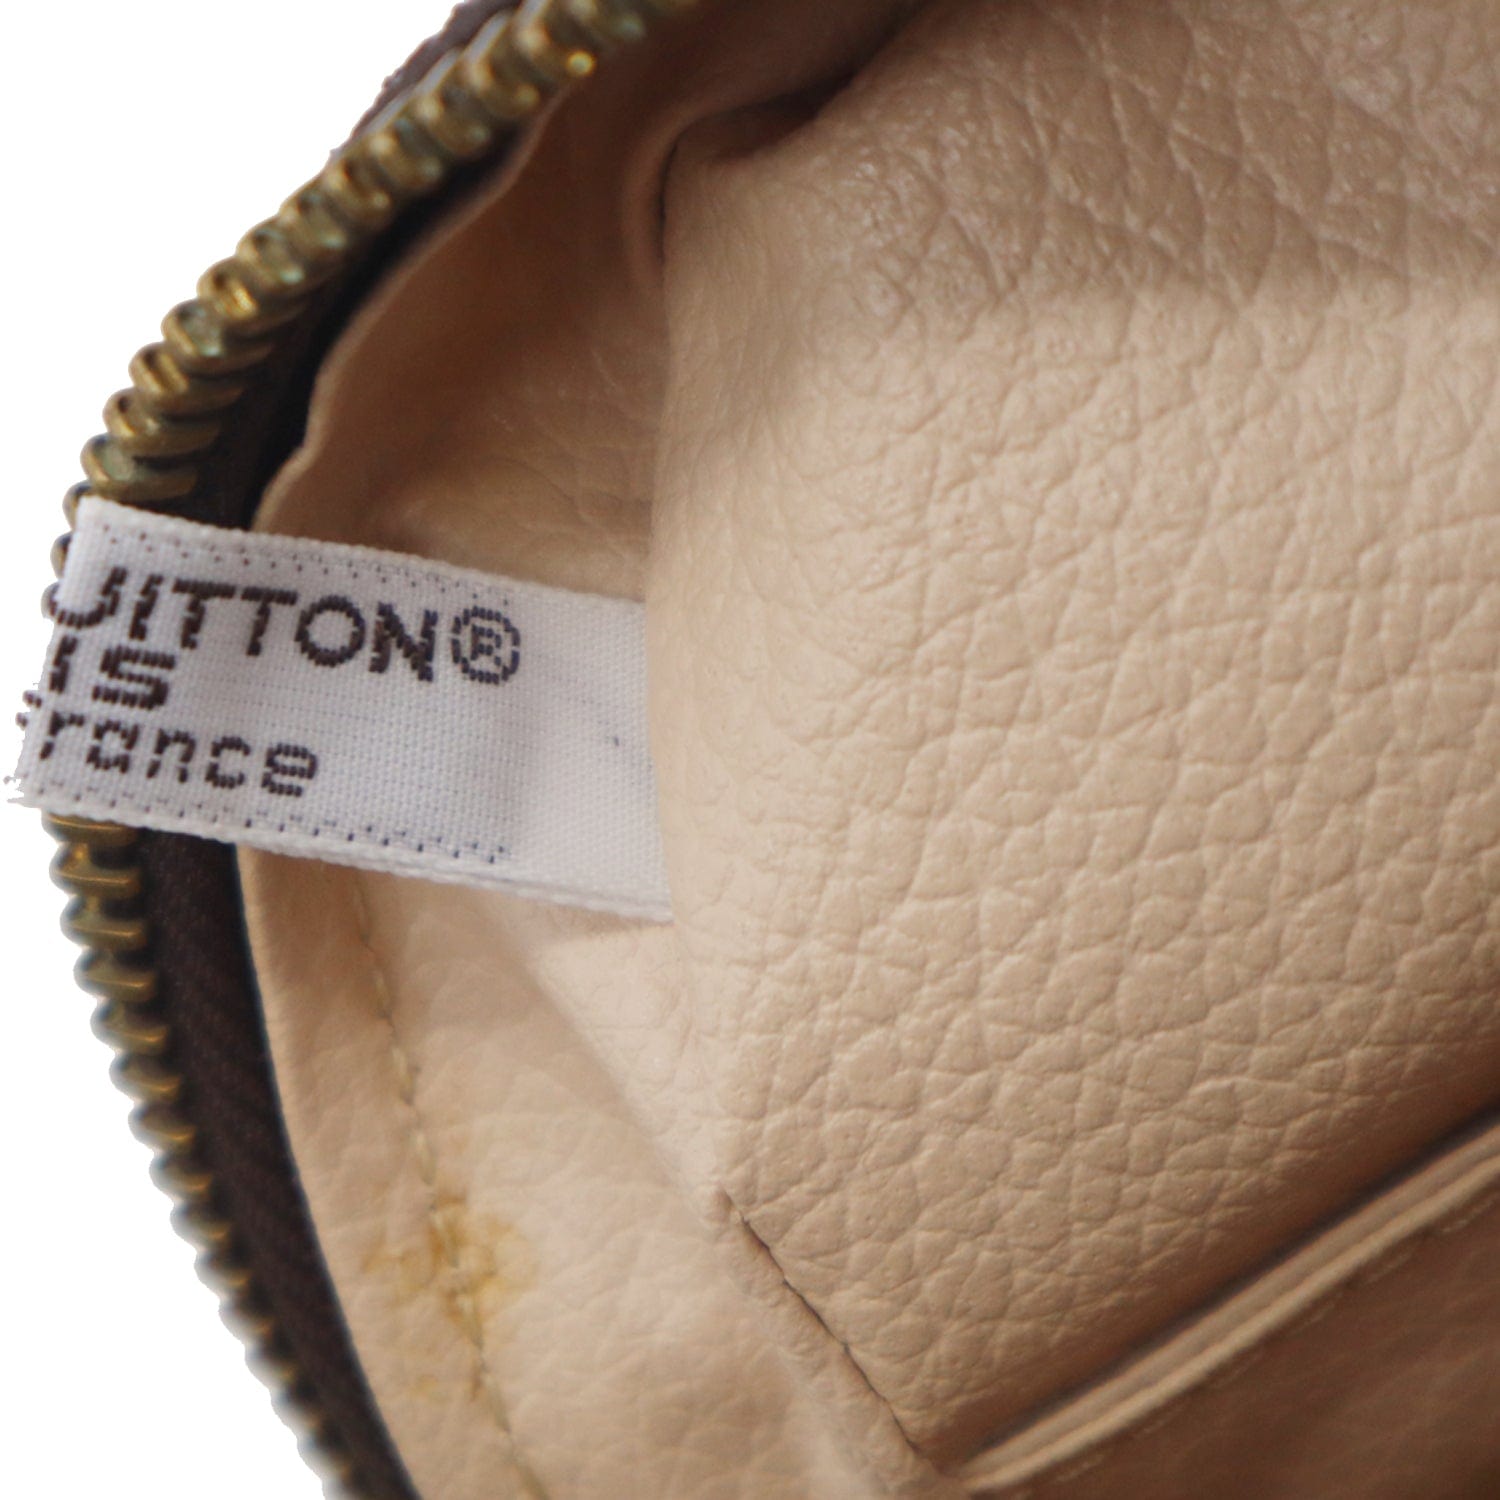 Trousse de toilette leather vanity case Louis Vuitton Brown in Leather -  37460220